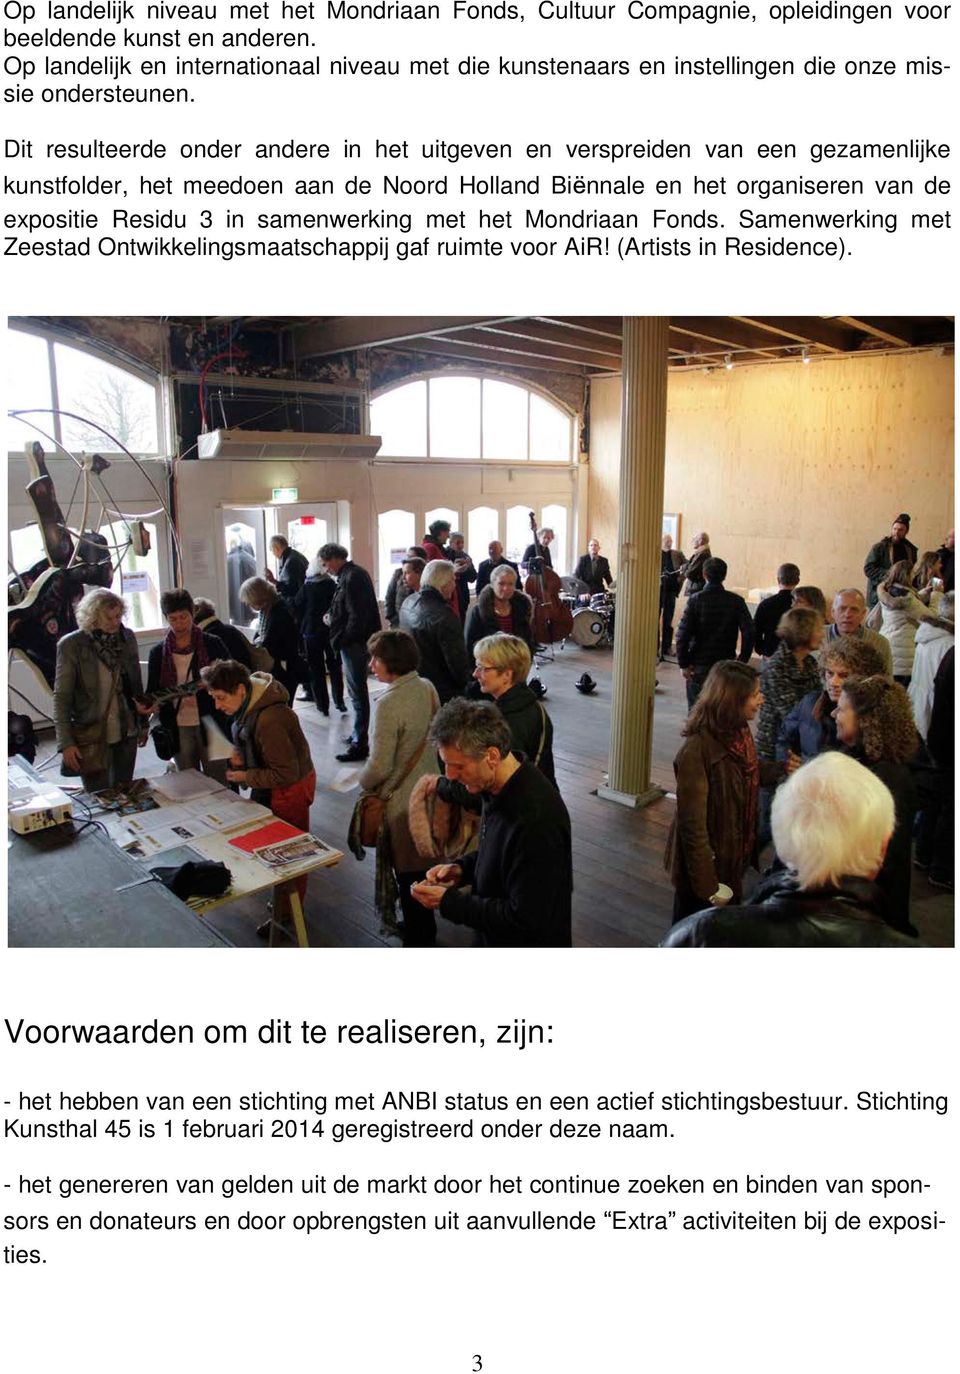 Dit resulteerde onder andere in het uitgeven en verspreiden van een gezamenlijke kunstfolder, het meedoen aan de Noord Holland Biënnale en het organiseren van de expositie Residu 3 in samenwerking